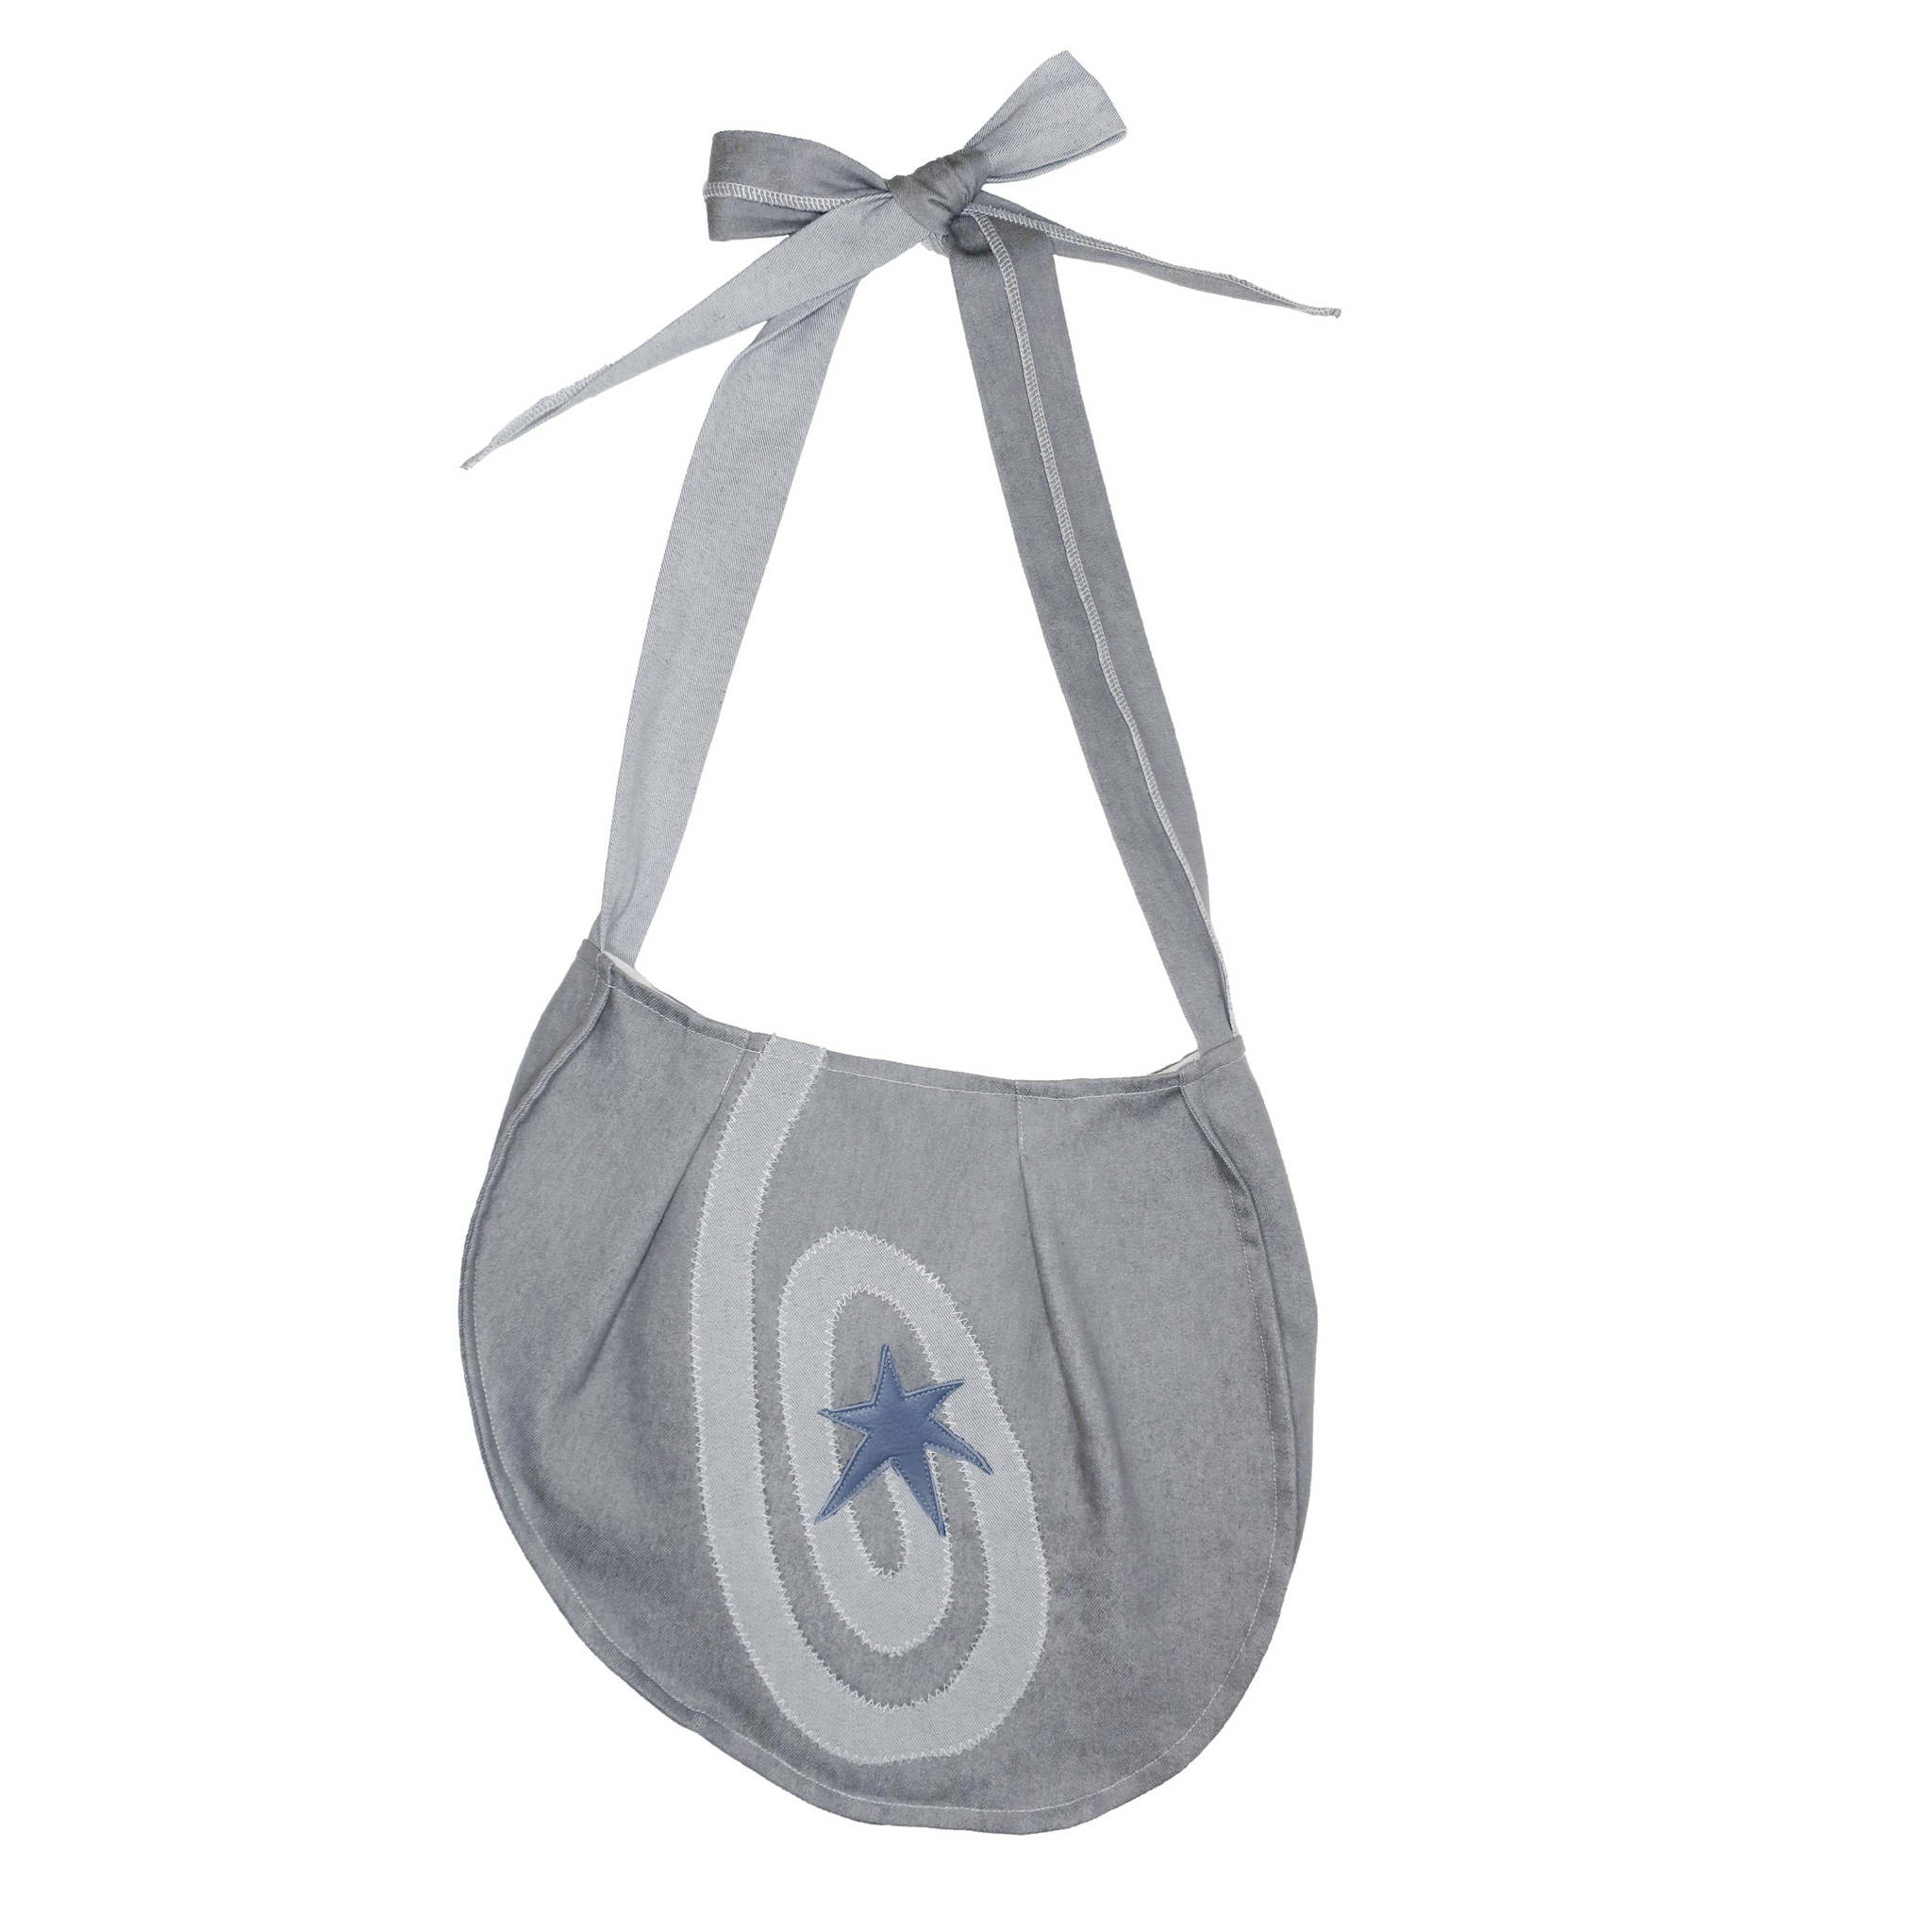 Swirl Bag in Pearl Grey